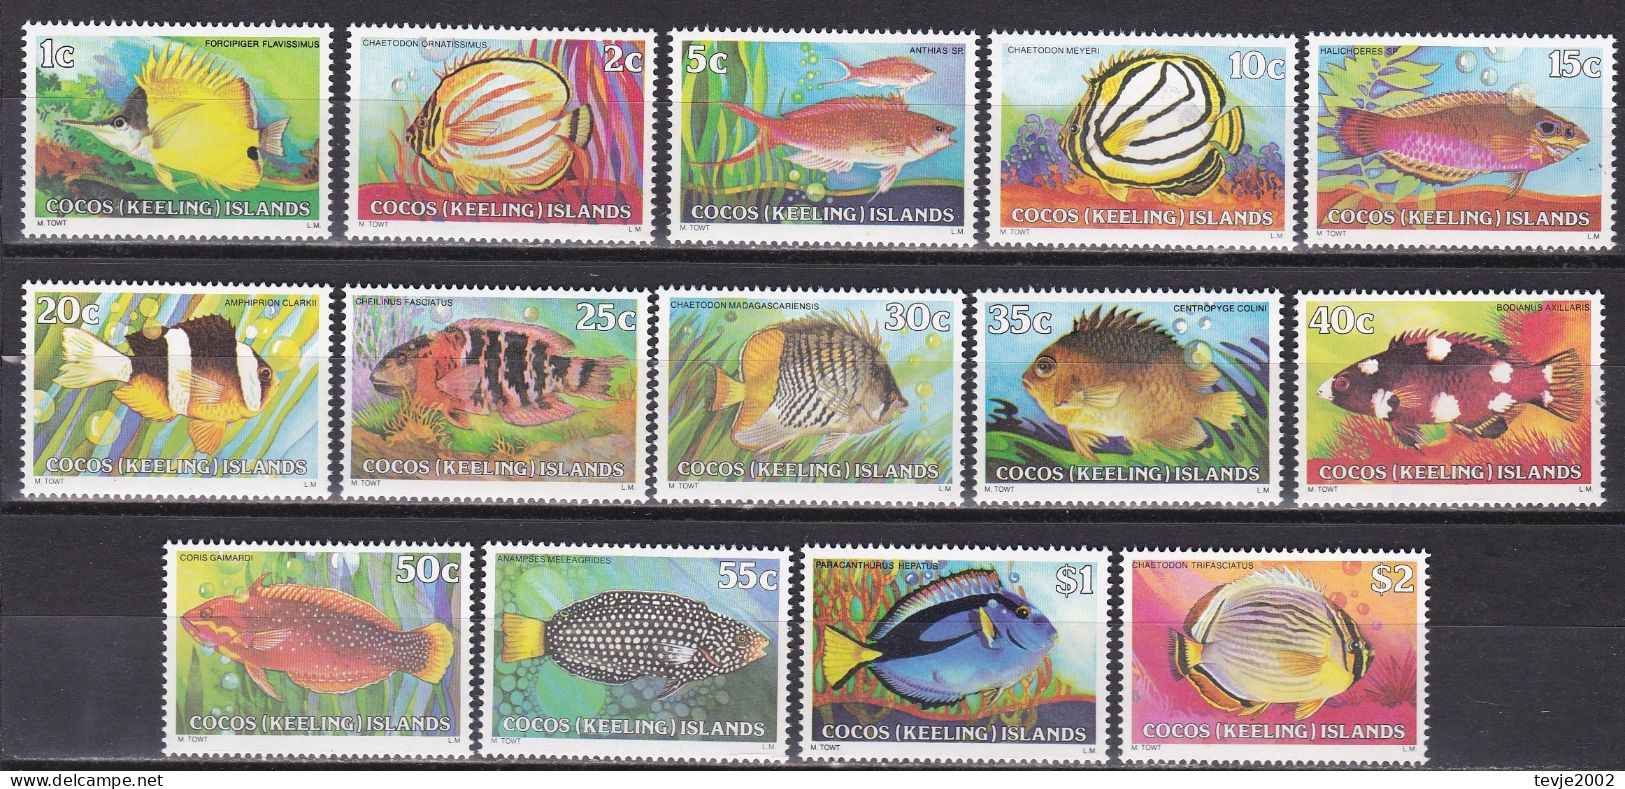 Kokos-Inseln Cocos Keeling Islands 1979 - Mi.Nr. 34 - 47 - Postfrisch MNH - Tiere Animals - Peces